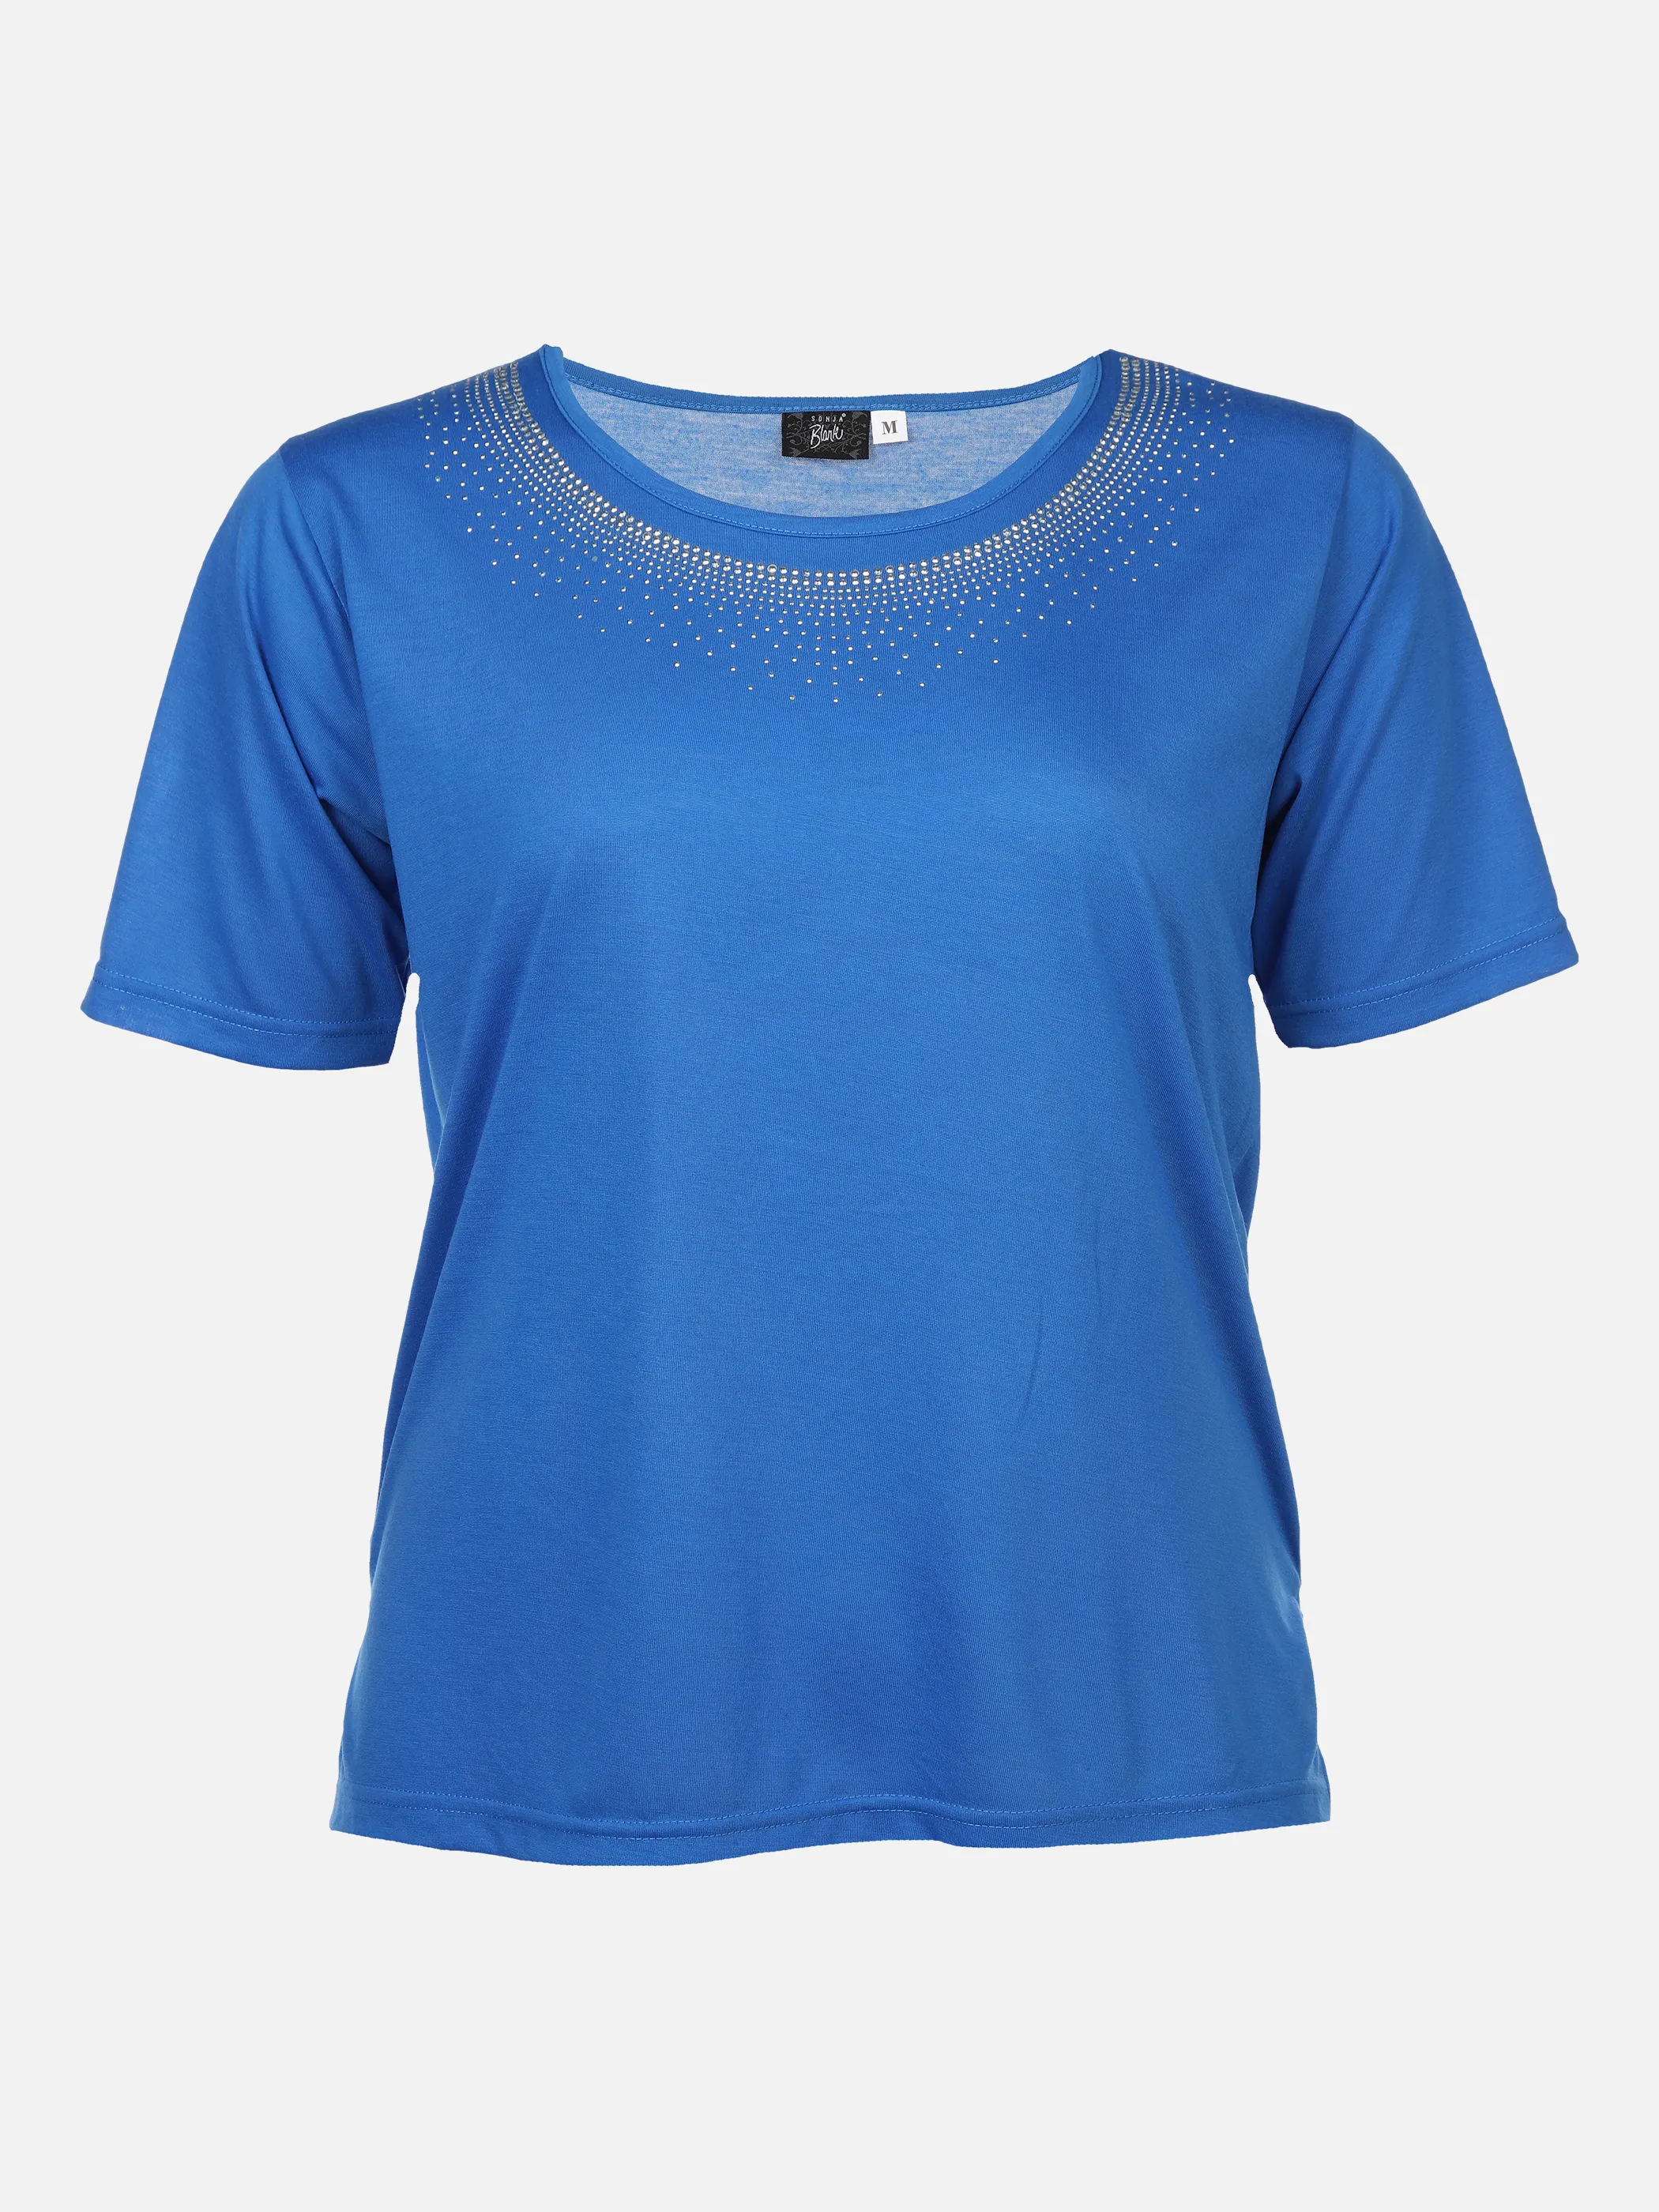 Sonja Blank Da-gr.Gr.T-Shirt m.Strassapplikation Blau 876186 SEEBLAU 1